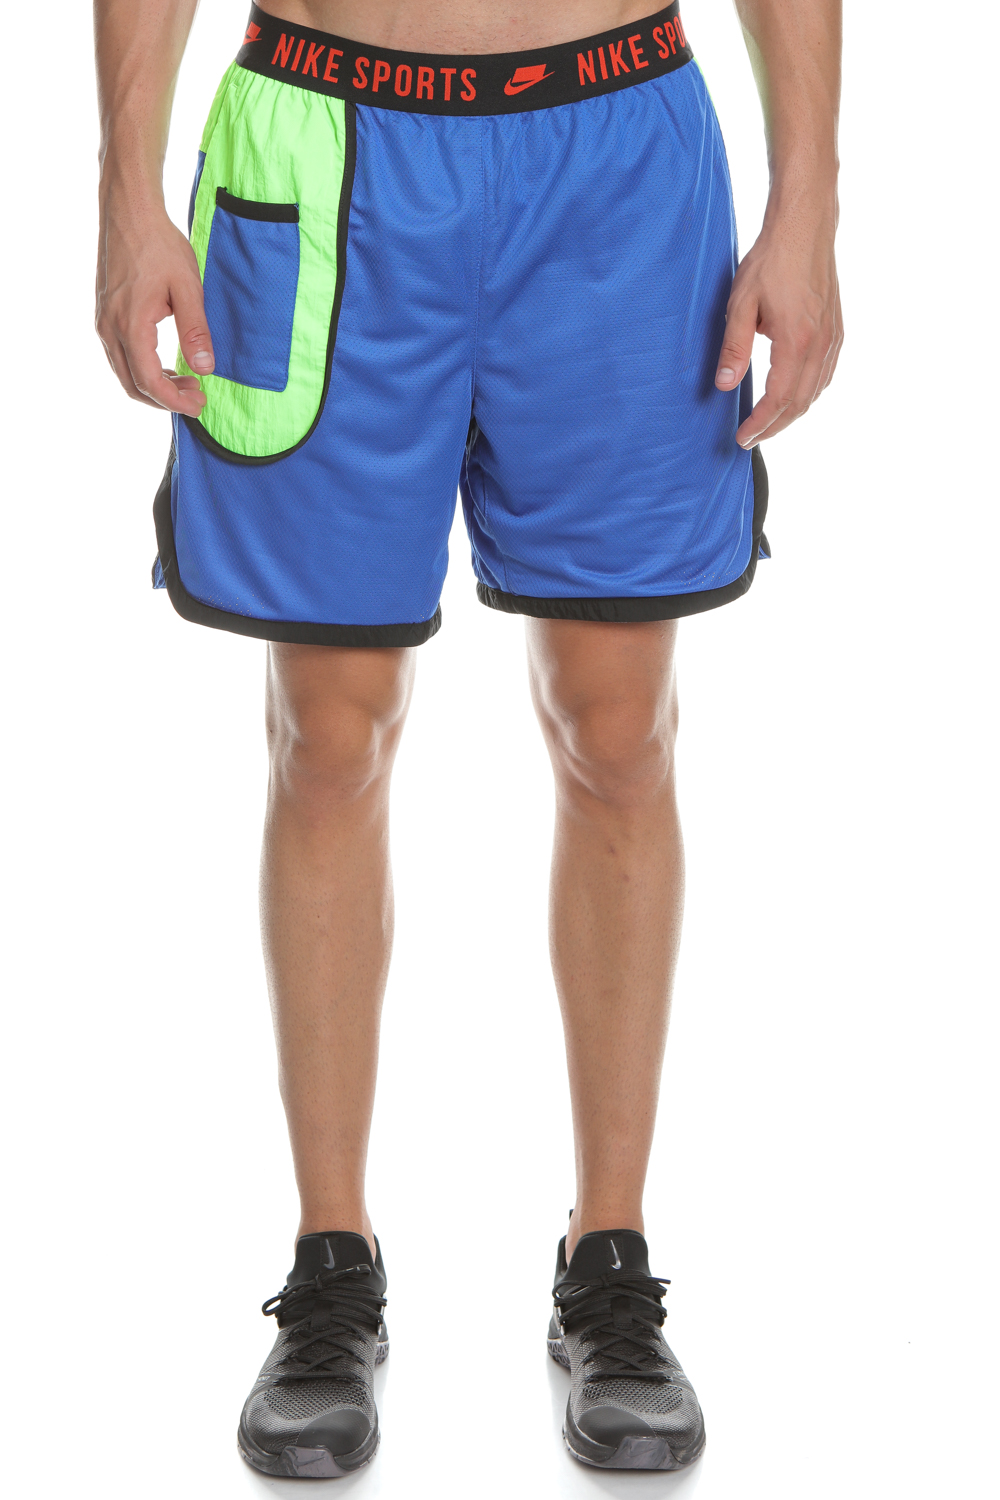 Ανδρικά/Ρούχα/Σορτς-Βερμούδες/Αθλητικά NIKE - Ανδρικό σορτς Nike Training Sport Dri-FIT μπλε